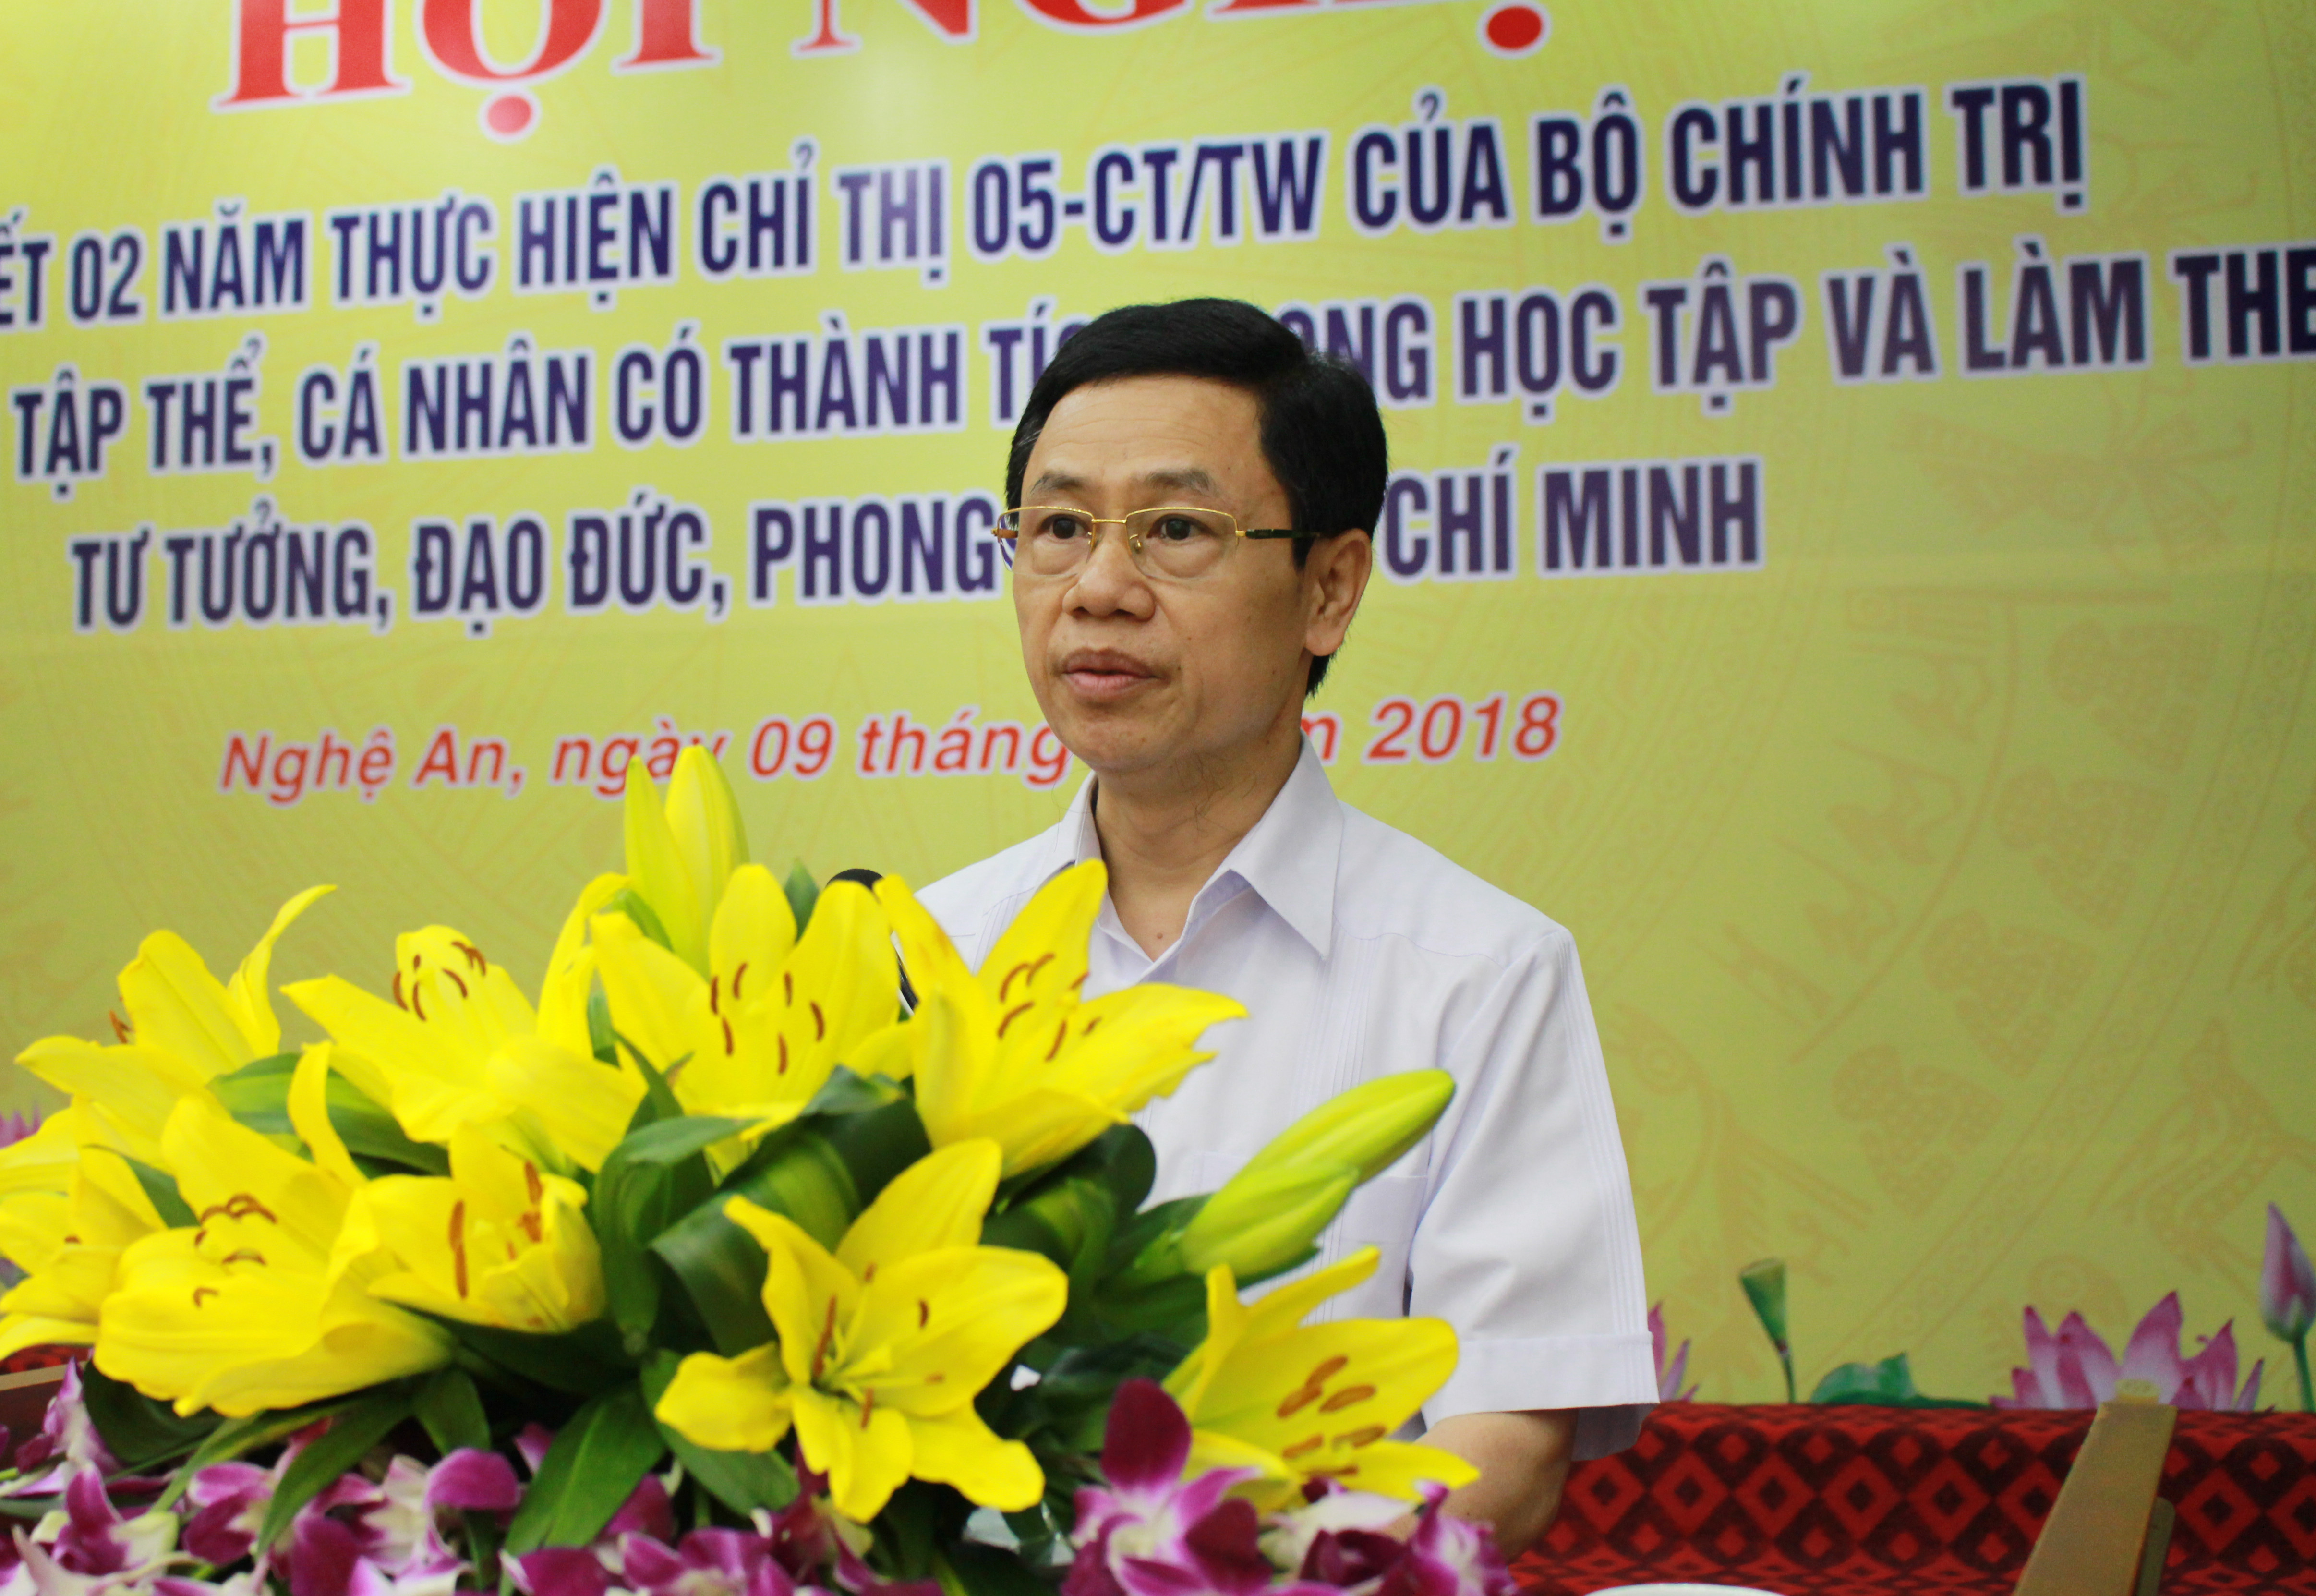 Đồng chí Nguyễn Xuân Sơn phát biểu cỉ đạo tại hội nghị. Ảnh: Phương Thúy